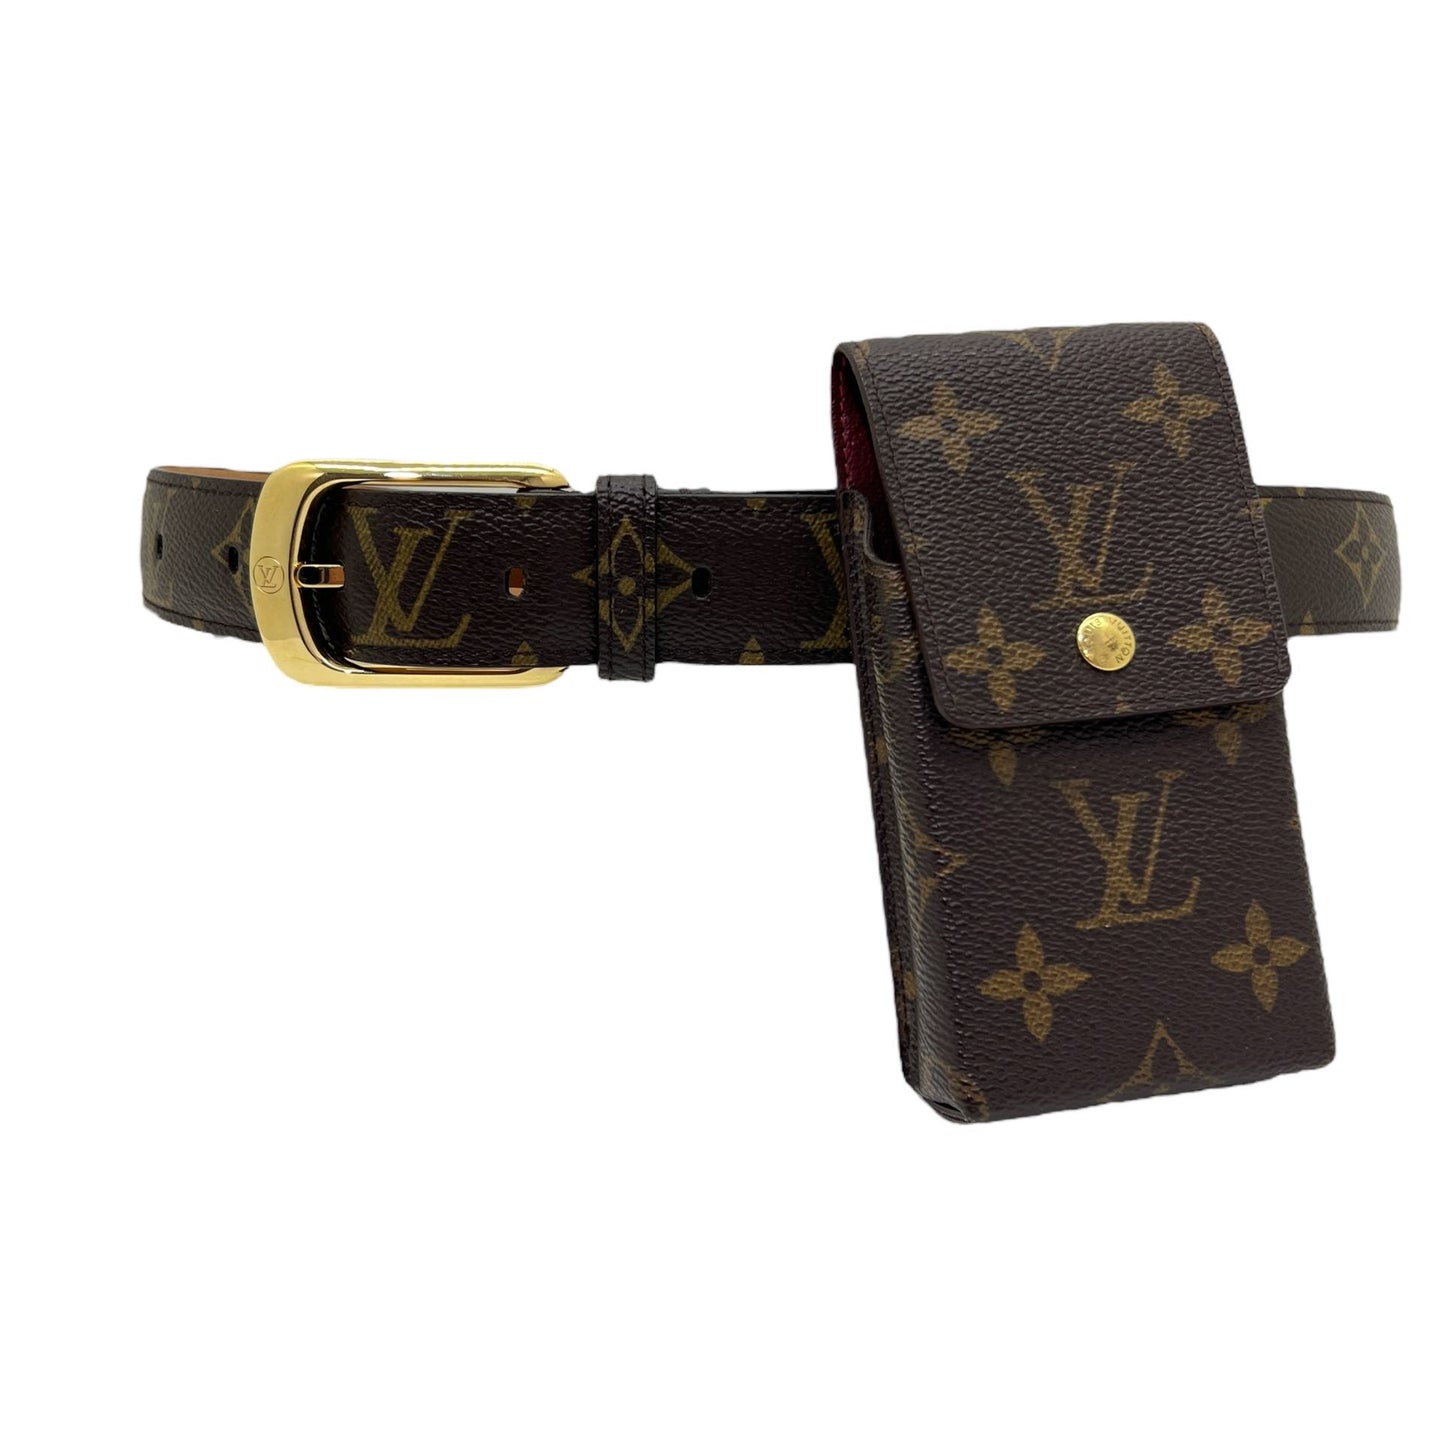 L V belt, Cintura Louis Vuitton, Con i prezzi migliori, spedizione e reso  gratuiti